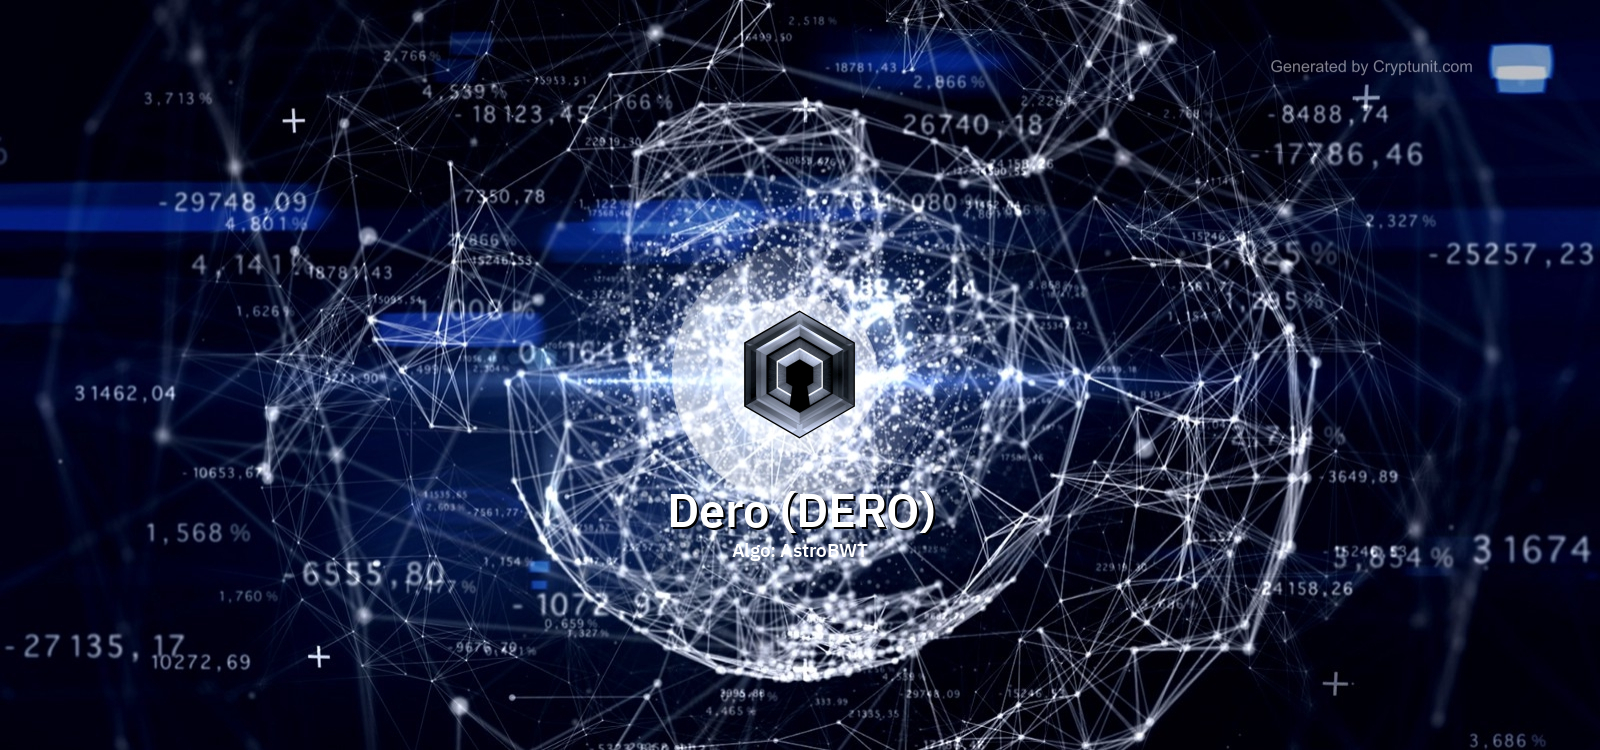 Dero (DERO) mining calculator - solo vs pool profitability | CryptUnit